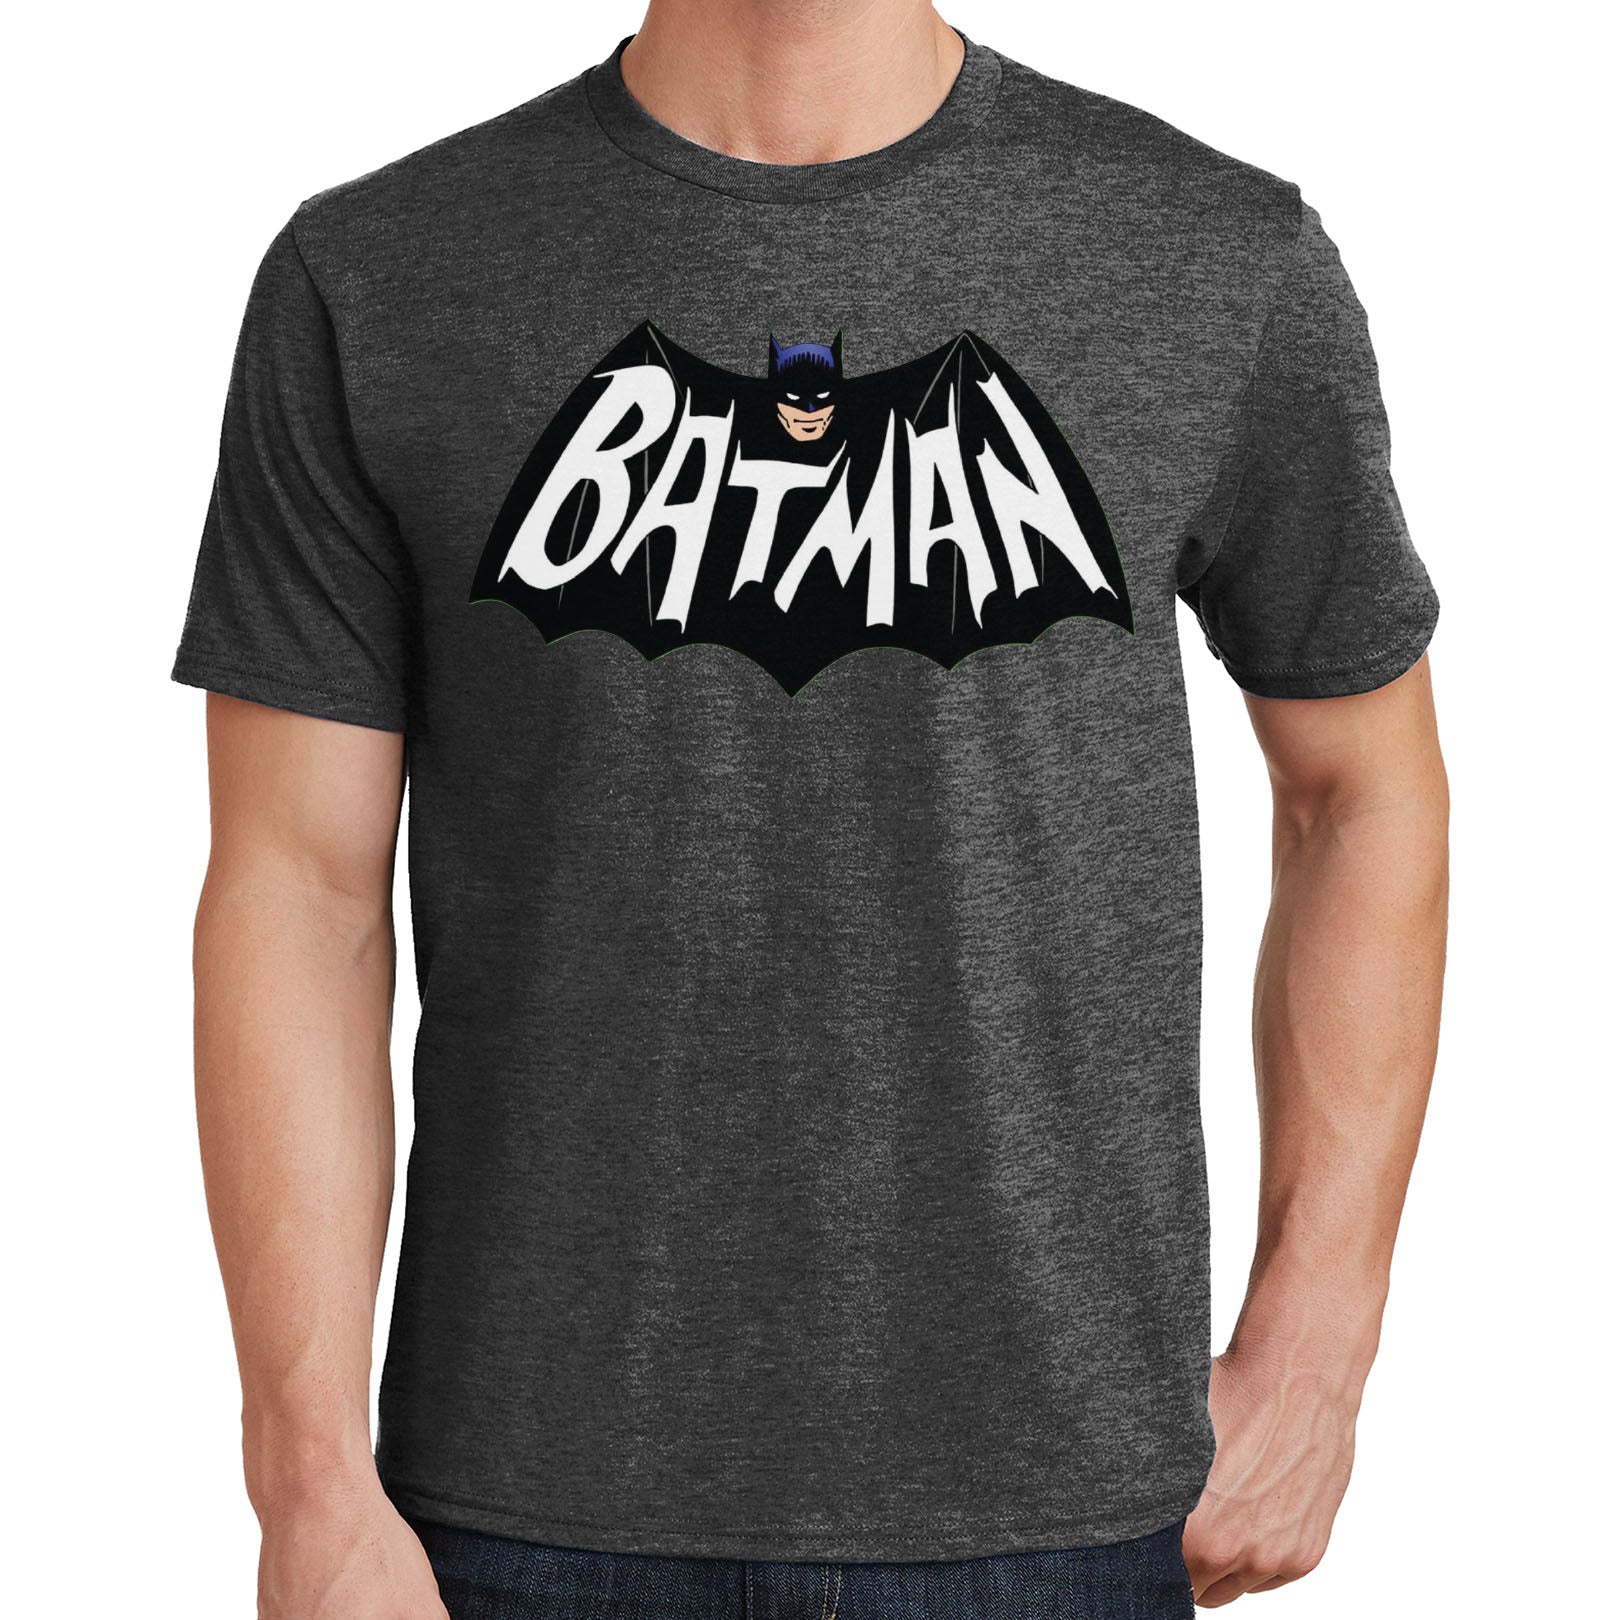 Batman Logo T Shirt 03206 | eBay